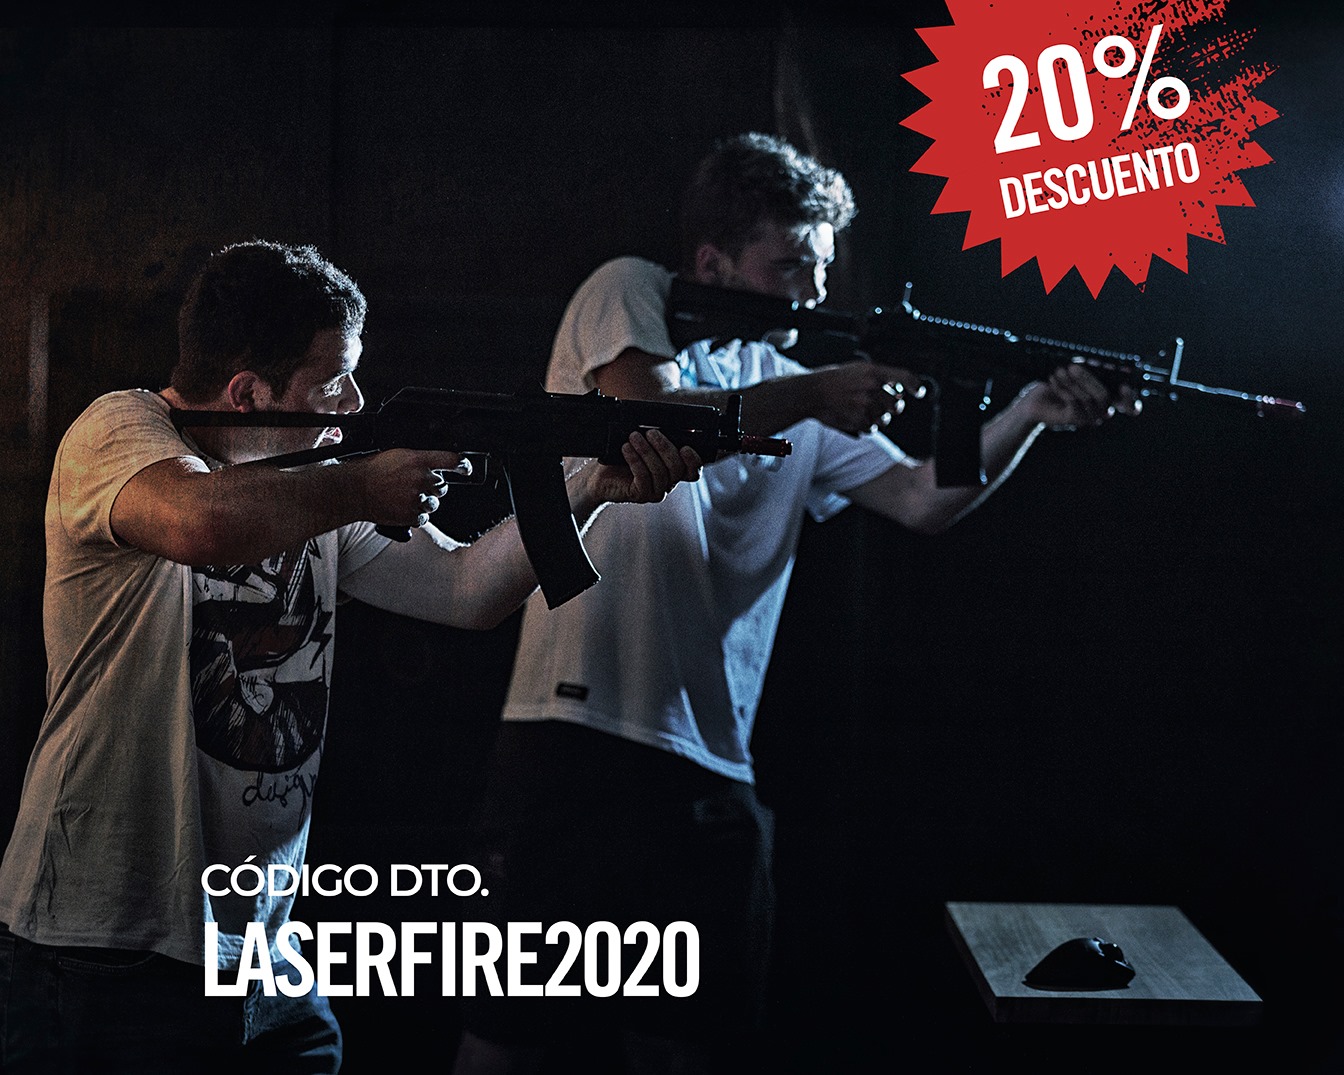 Laser Fire Promoción Agosto 2020